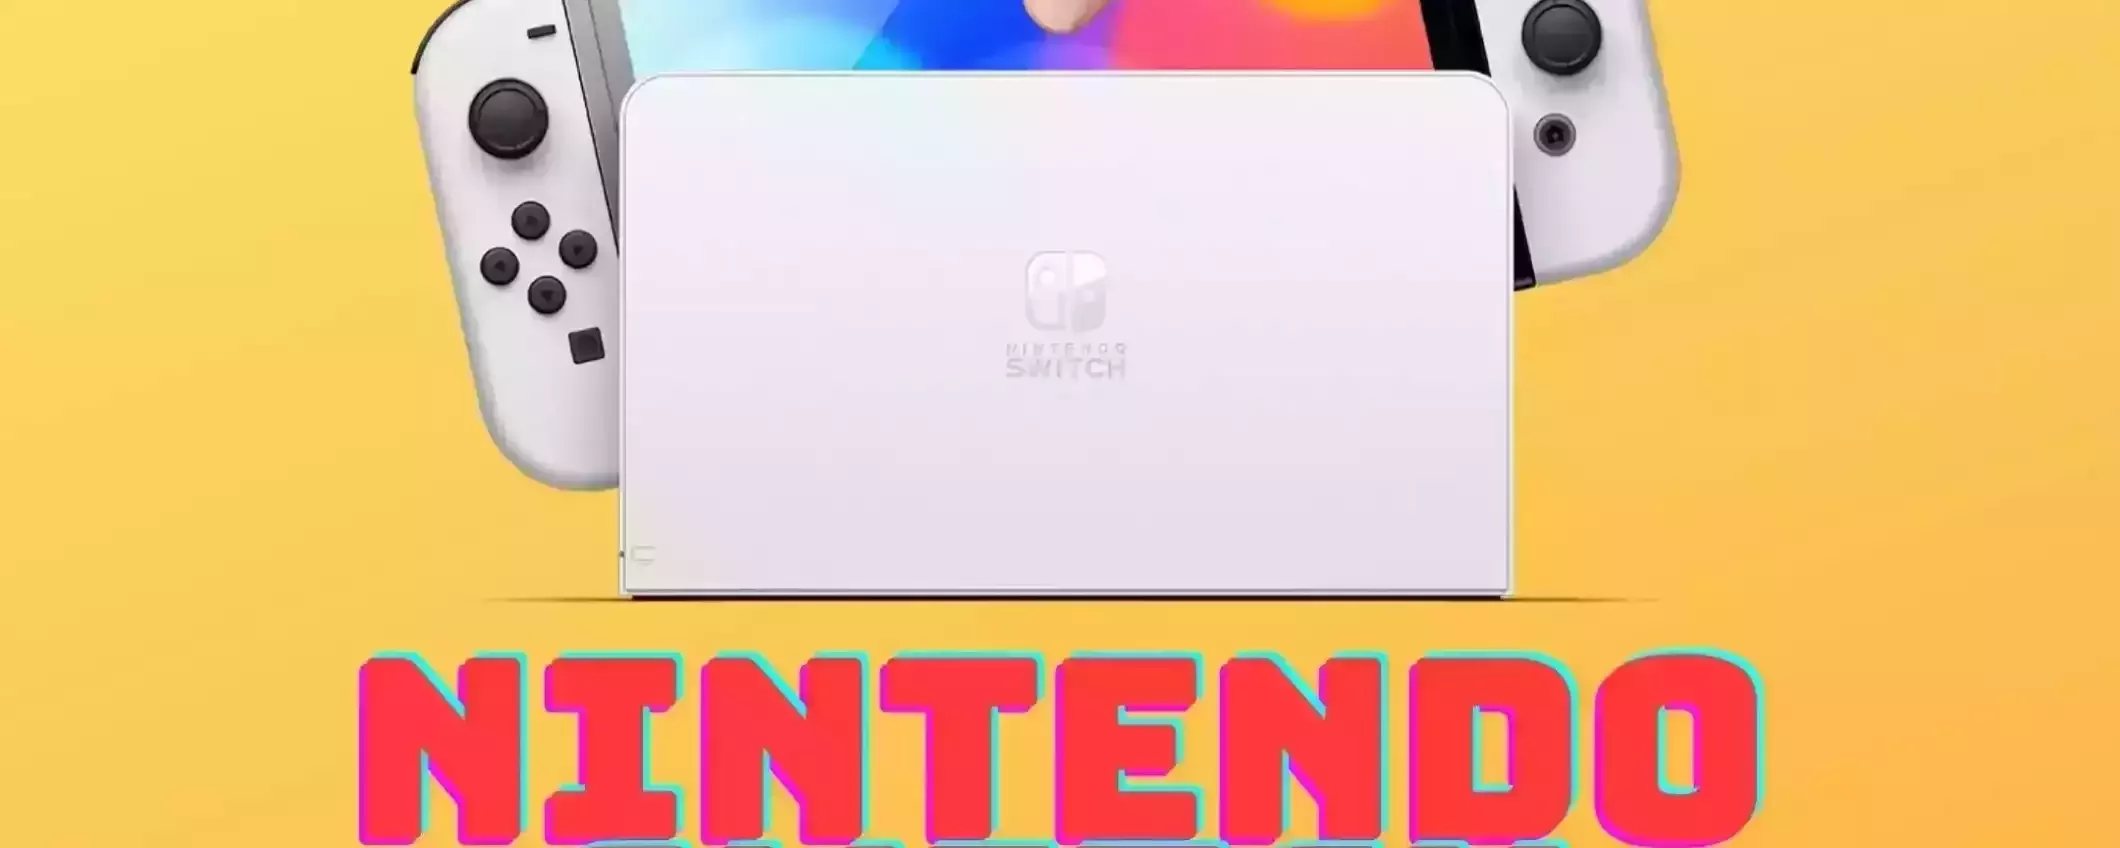 Nintendo Switch OLED a meno di 300€ su Amazon: corri a prenderla